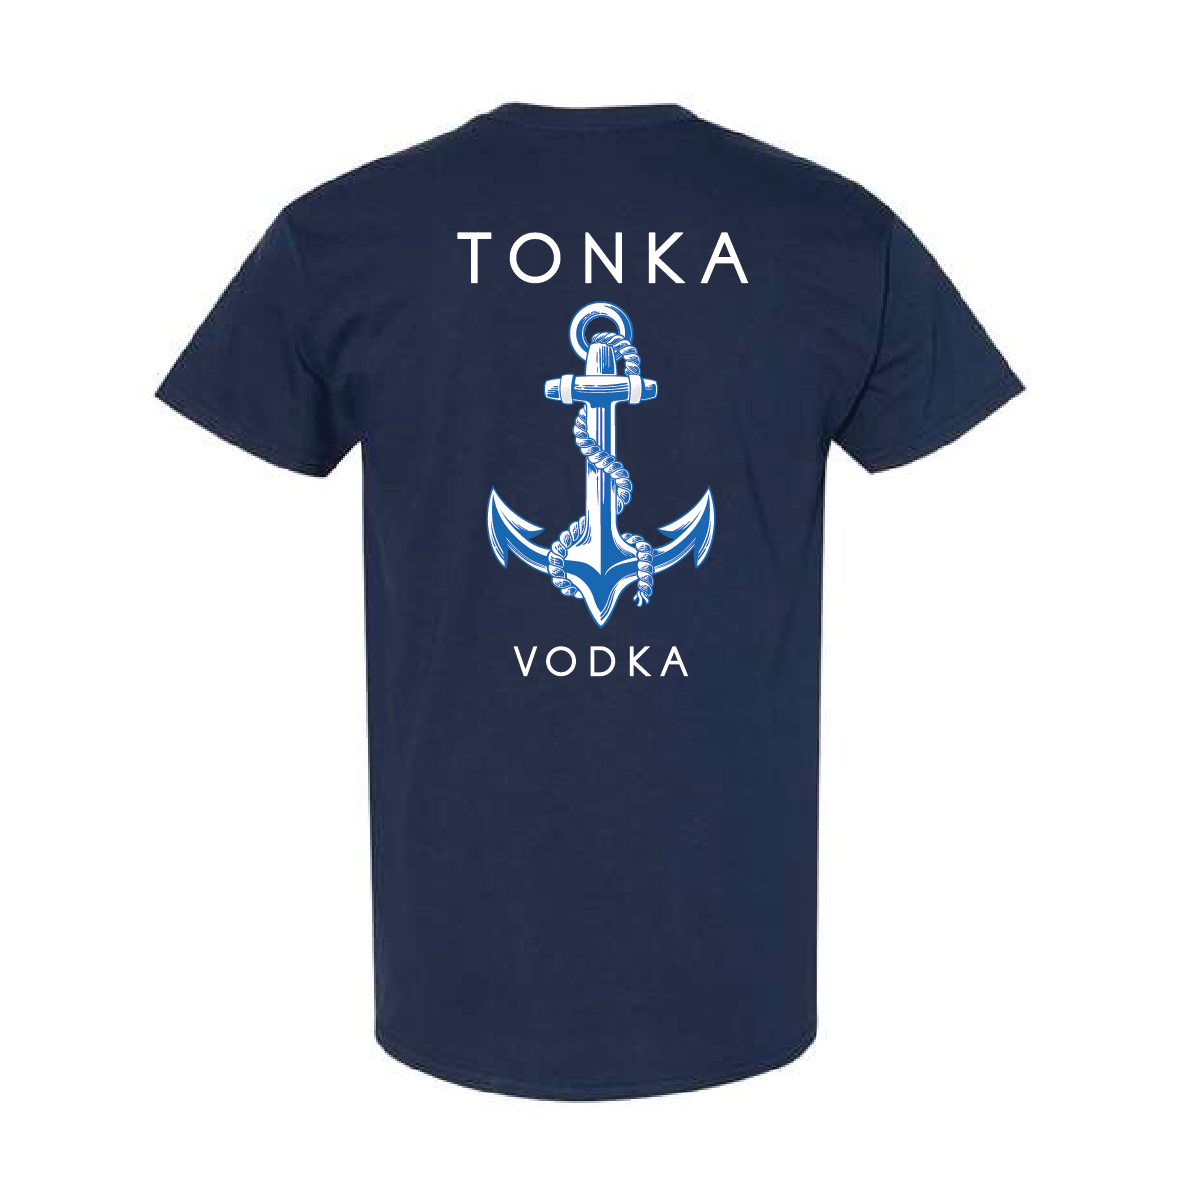 Tonka Vodka Get Tonka'd T-shirt